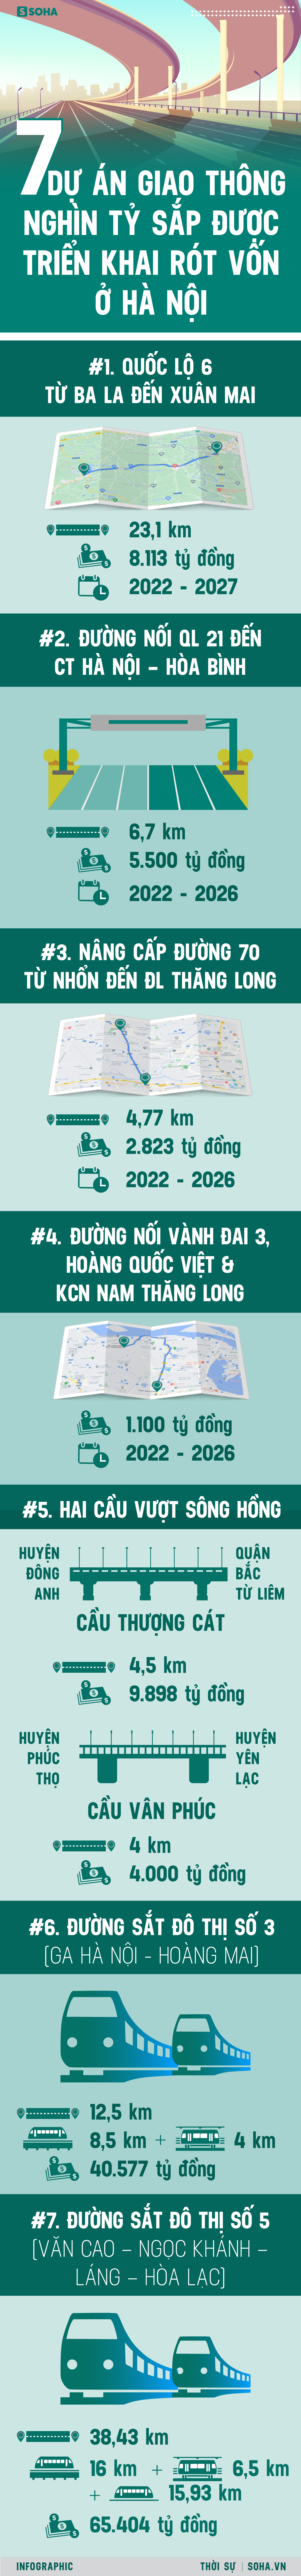  Hà Nội sắp lột xác thành đô thị xịn xò bậc nhất nhờ 7 siêu dự án giao thông nghìn tỷ - Ảnh 1.